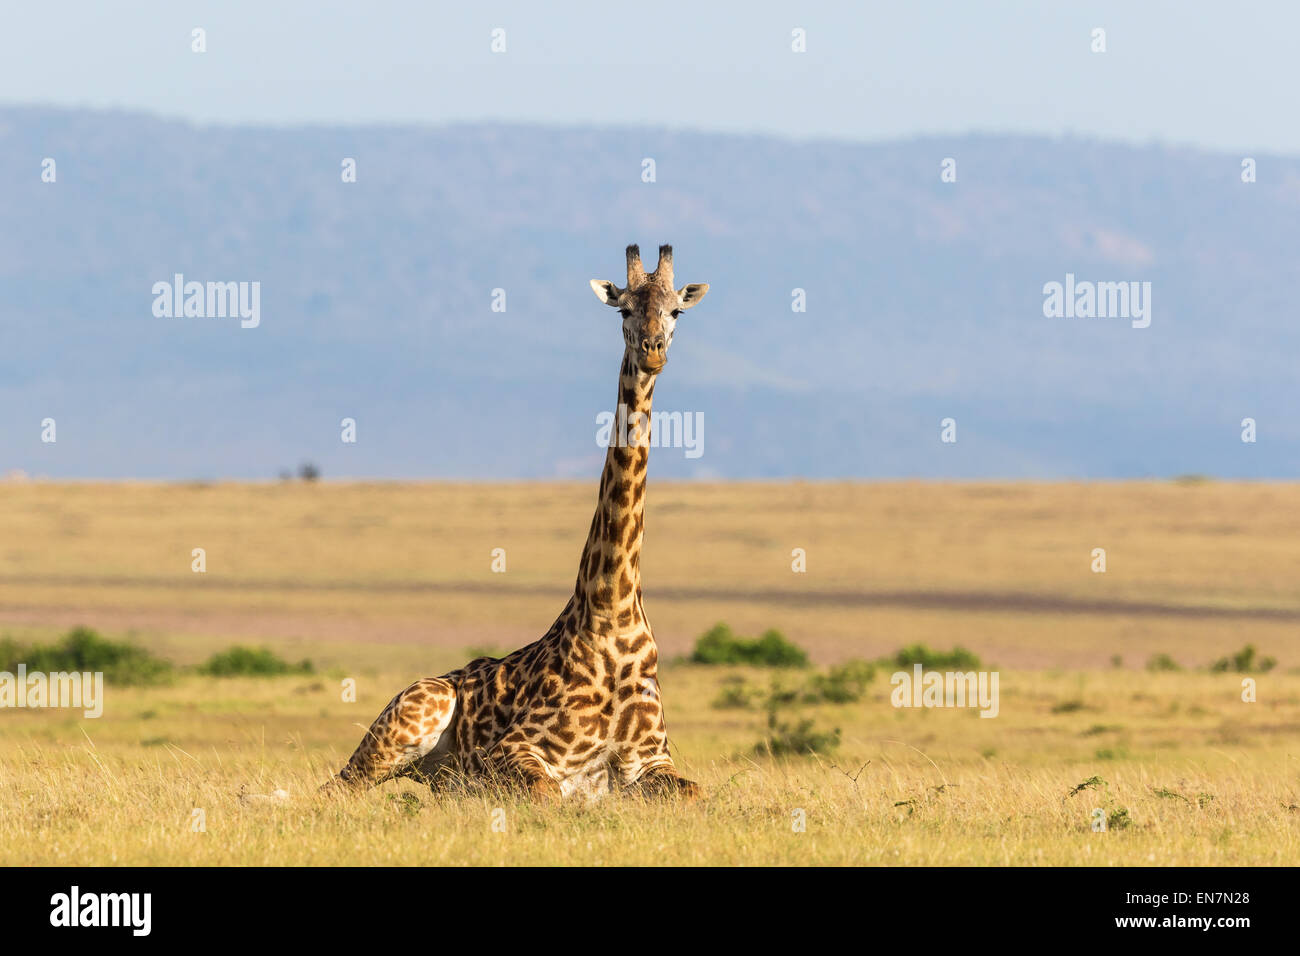 Girafe couchée sur le paysage de savane Banque D'Images